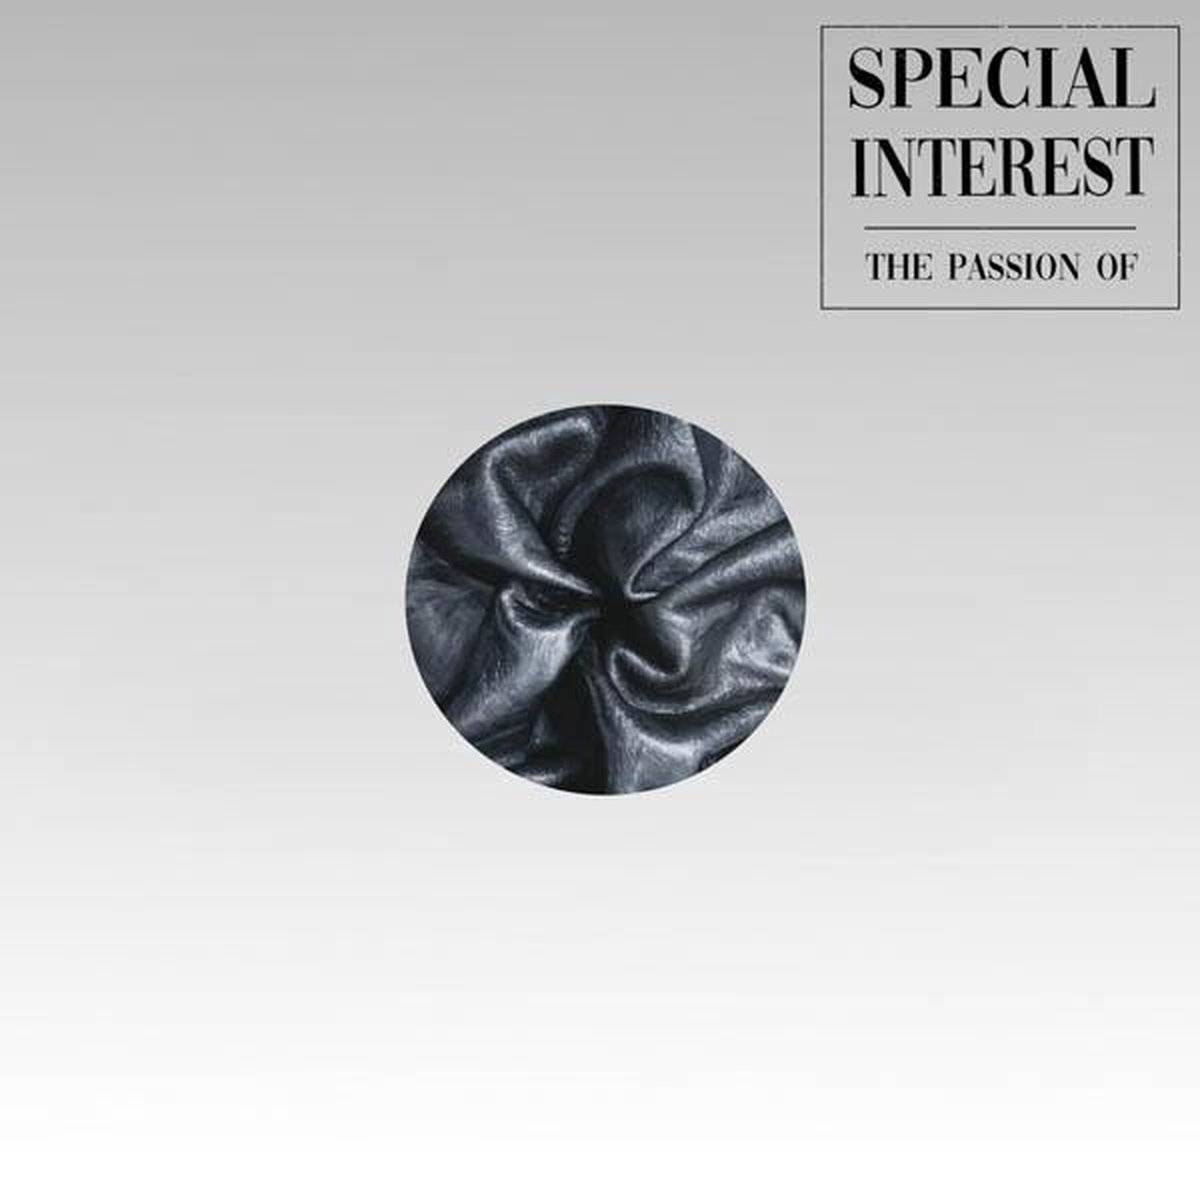 Vinile Special Interest - The Passion Of NUOVO SIGILLATO, EDIZIONE DEL 28/08/2020 SUBITO DISPONIBILE